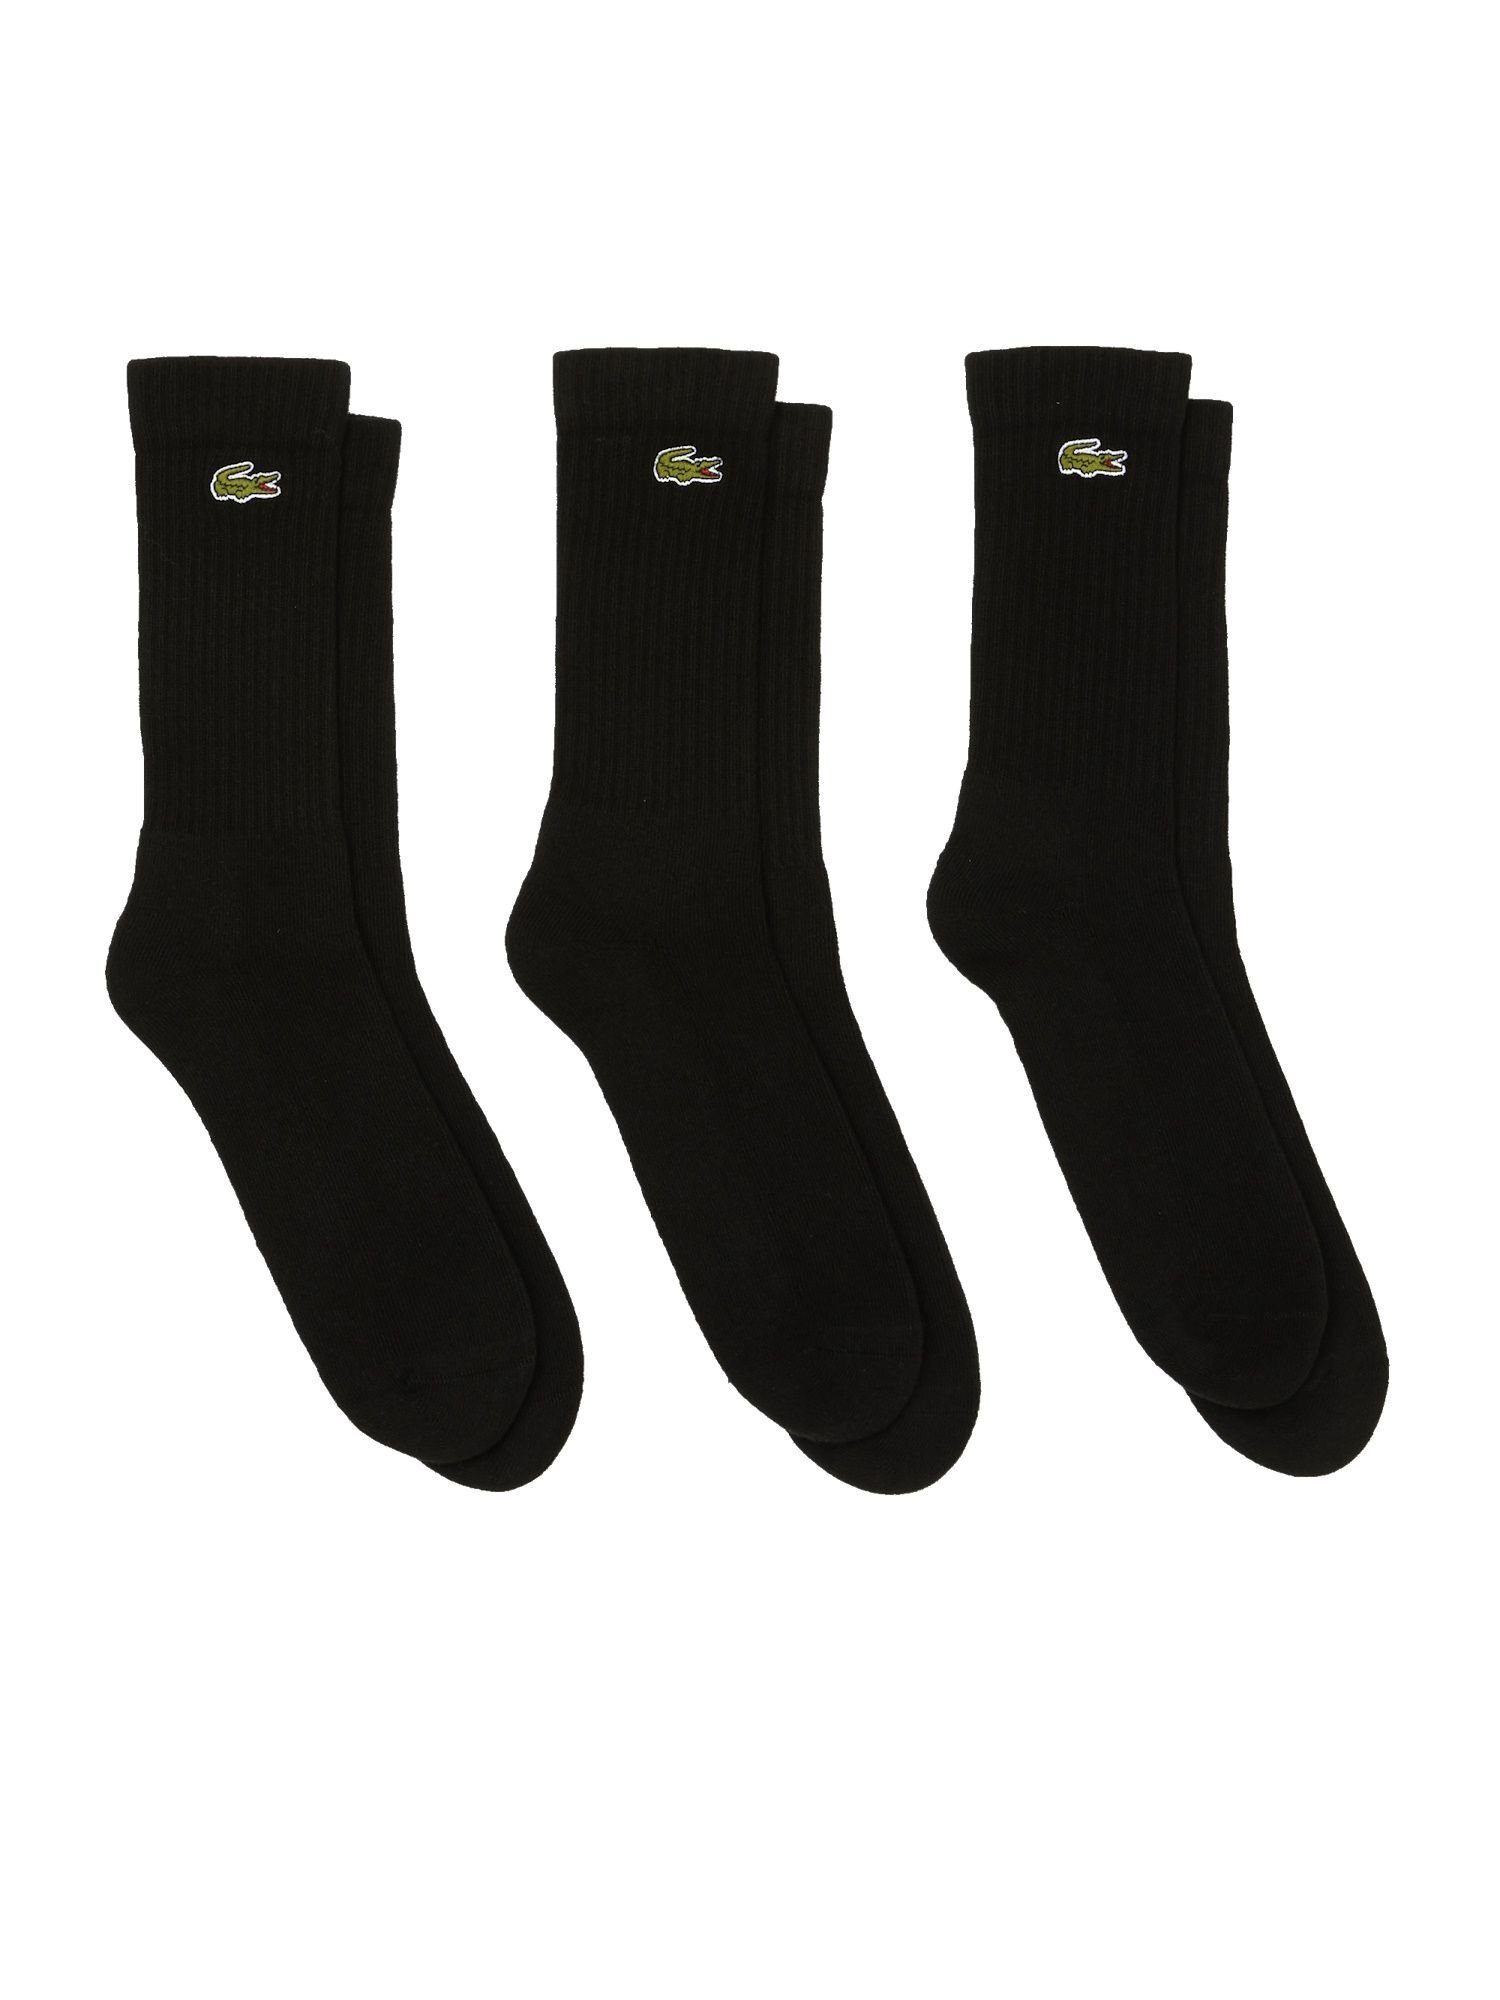 Lacoste Socken Socken Permanent Offer (3-Paar) Dreierpack Socken hohe schwarz